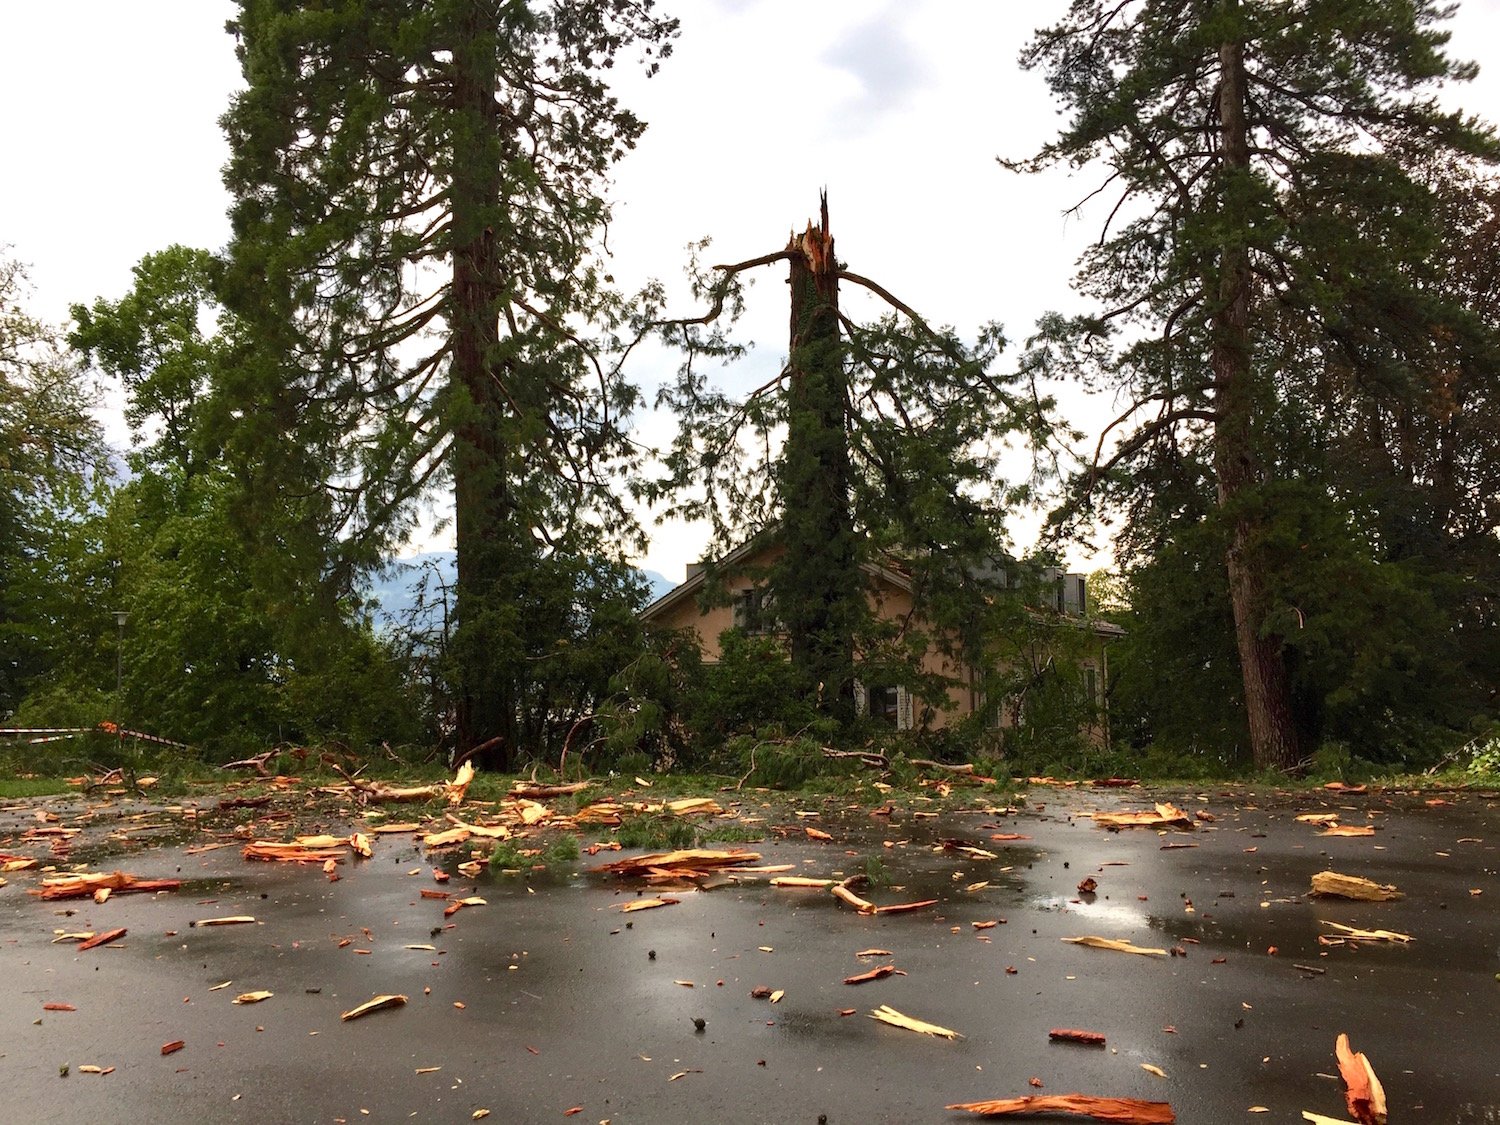 Trümmerhaufen: Der Blitz schlug in den 150-jährigen Mammutbaum ein und zerstörte das Holz.